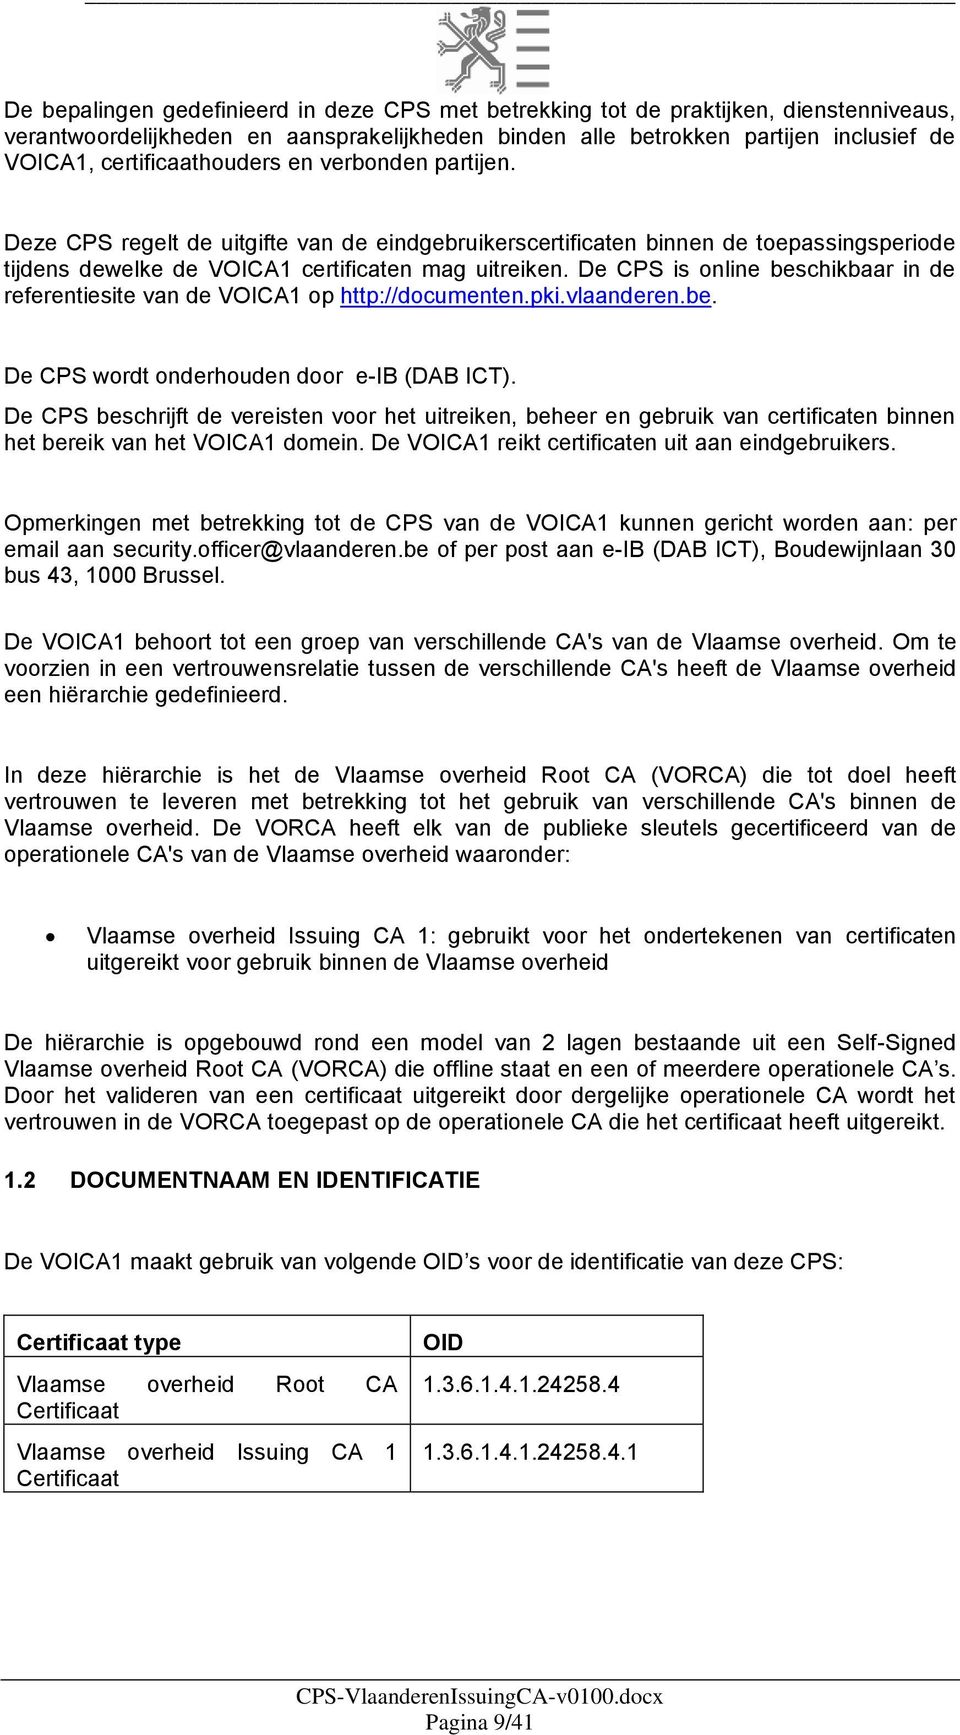 De CPS is online beschikbaar in de referentiesite van de VOICA1 op http://documenten.pki.vlaanderen.be. De CPS wordt onderhouden door e-ib (DAB ICT).